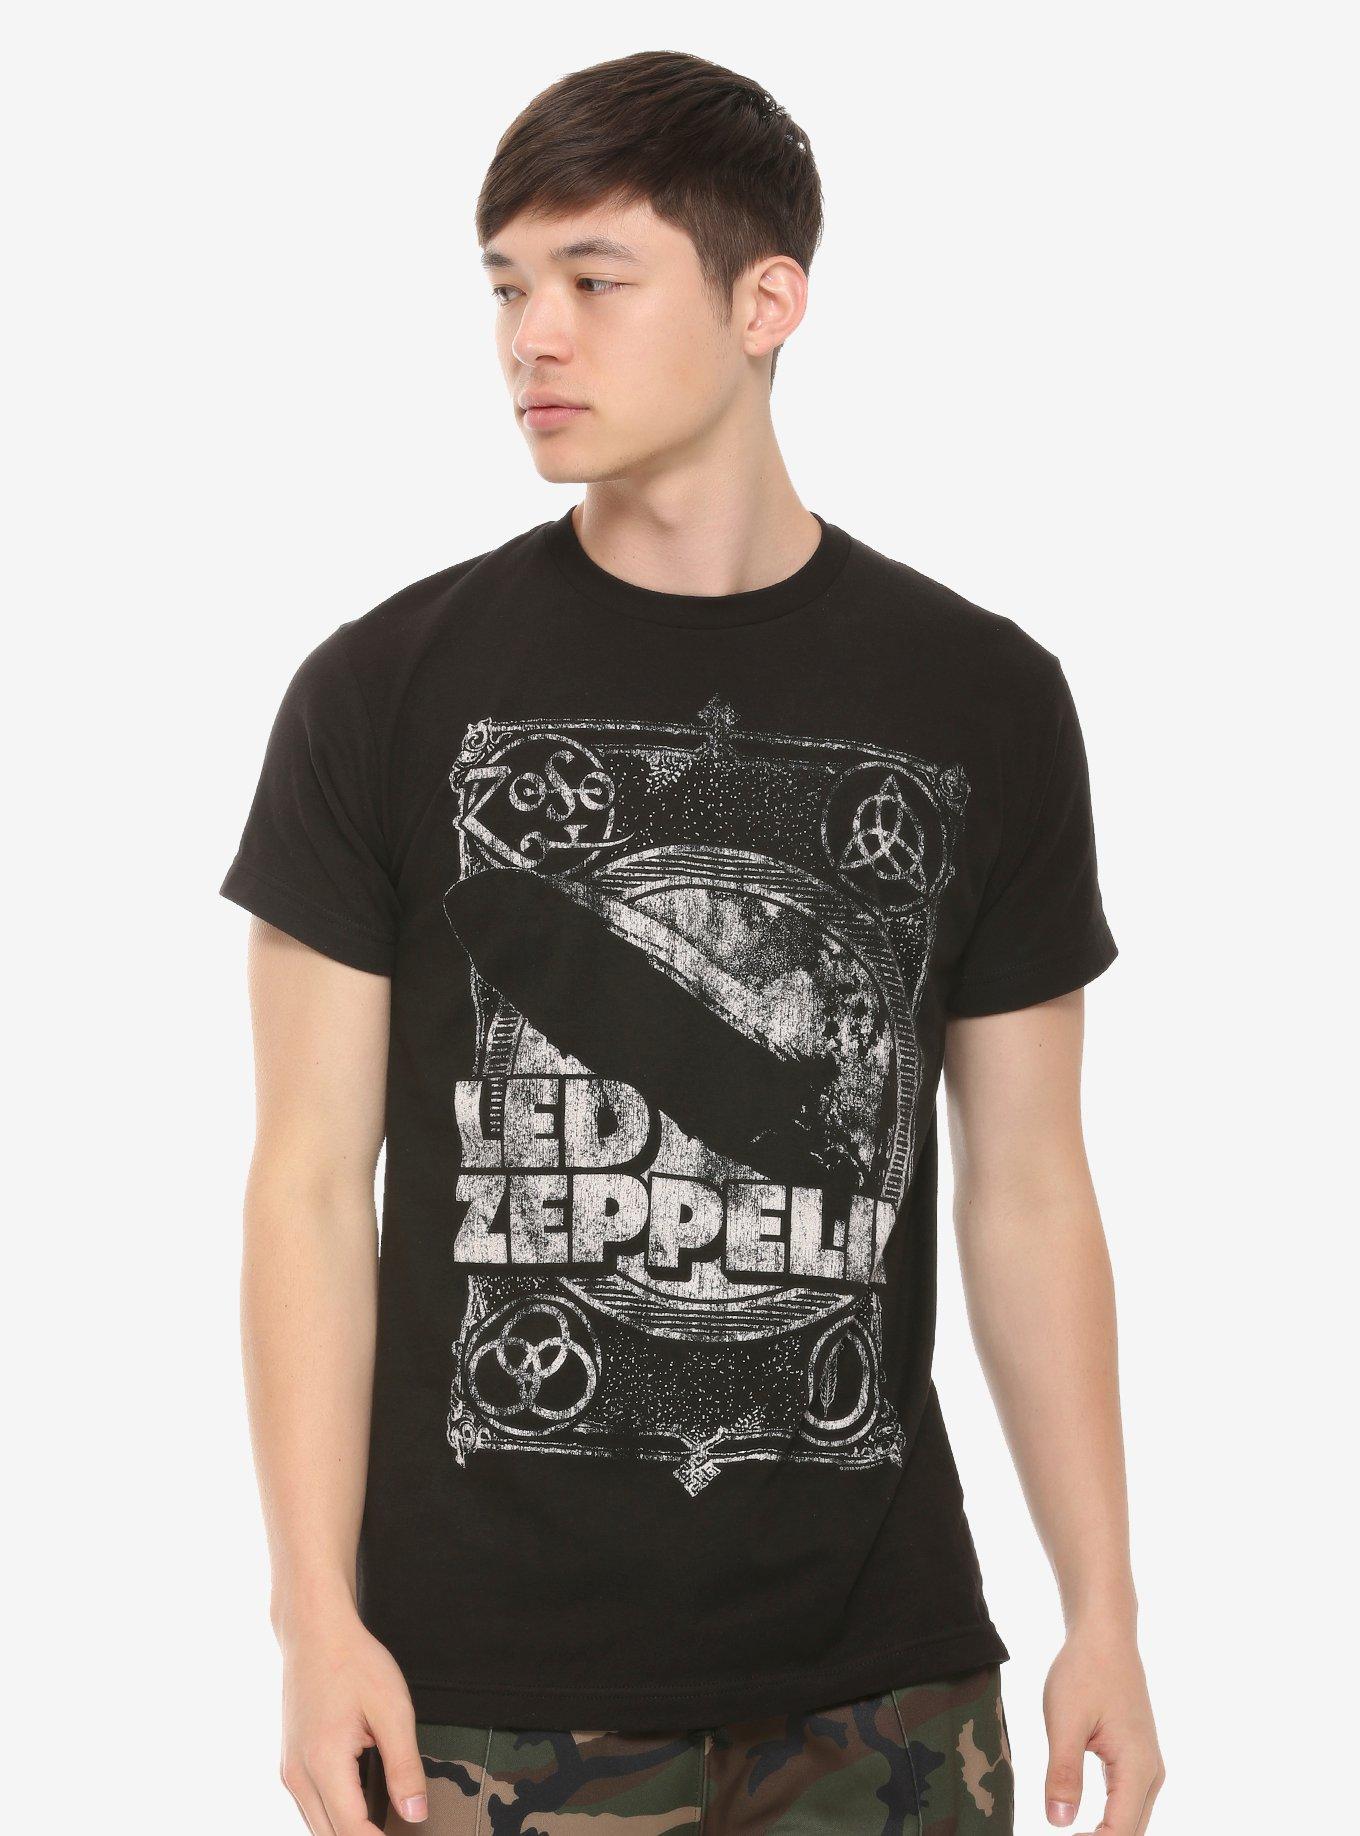 Led Zeppelin Zoso Blimp Distressed Print T-Shirt, BLACK, alternate